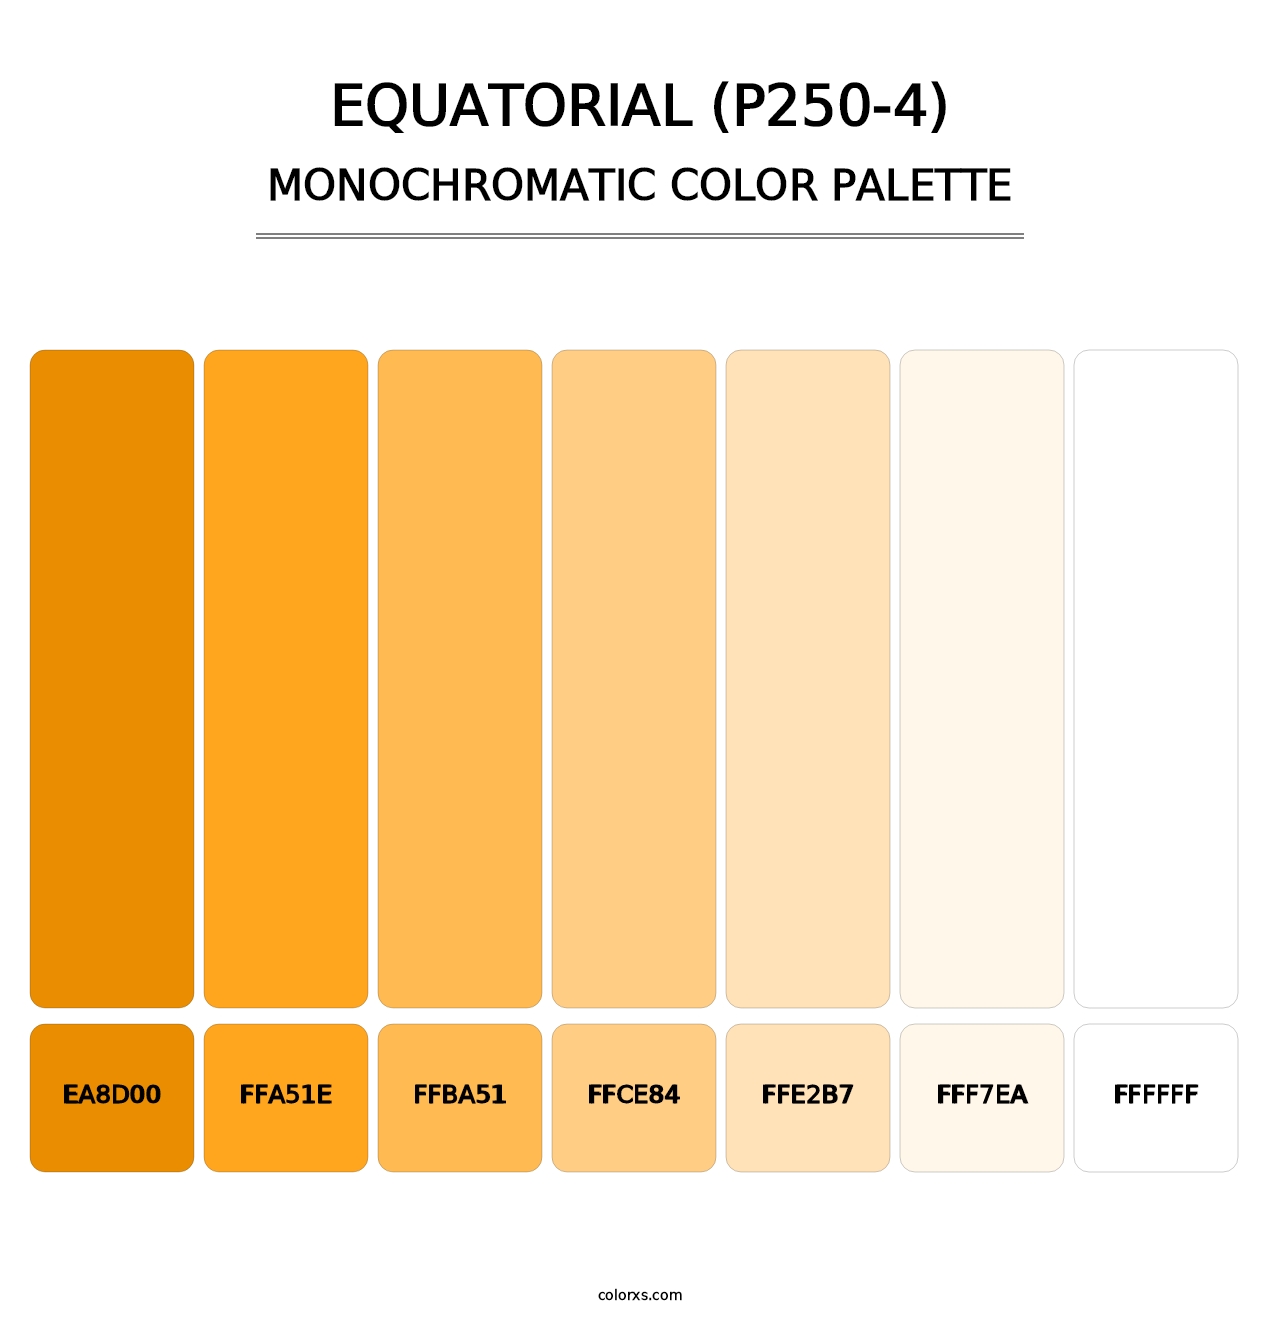 Equatorial (P250-4) - Monochromatic Color Palette